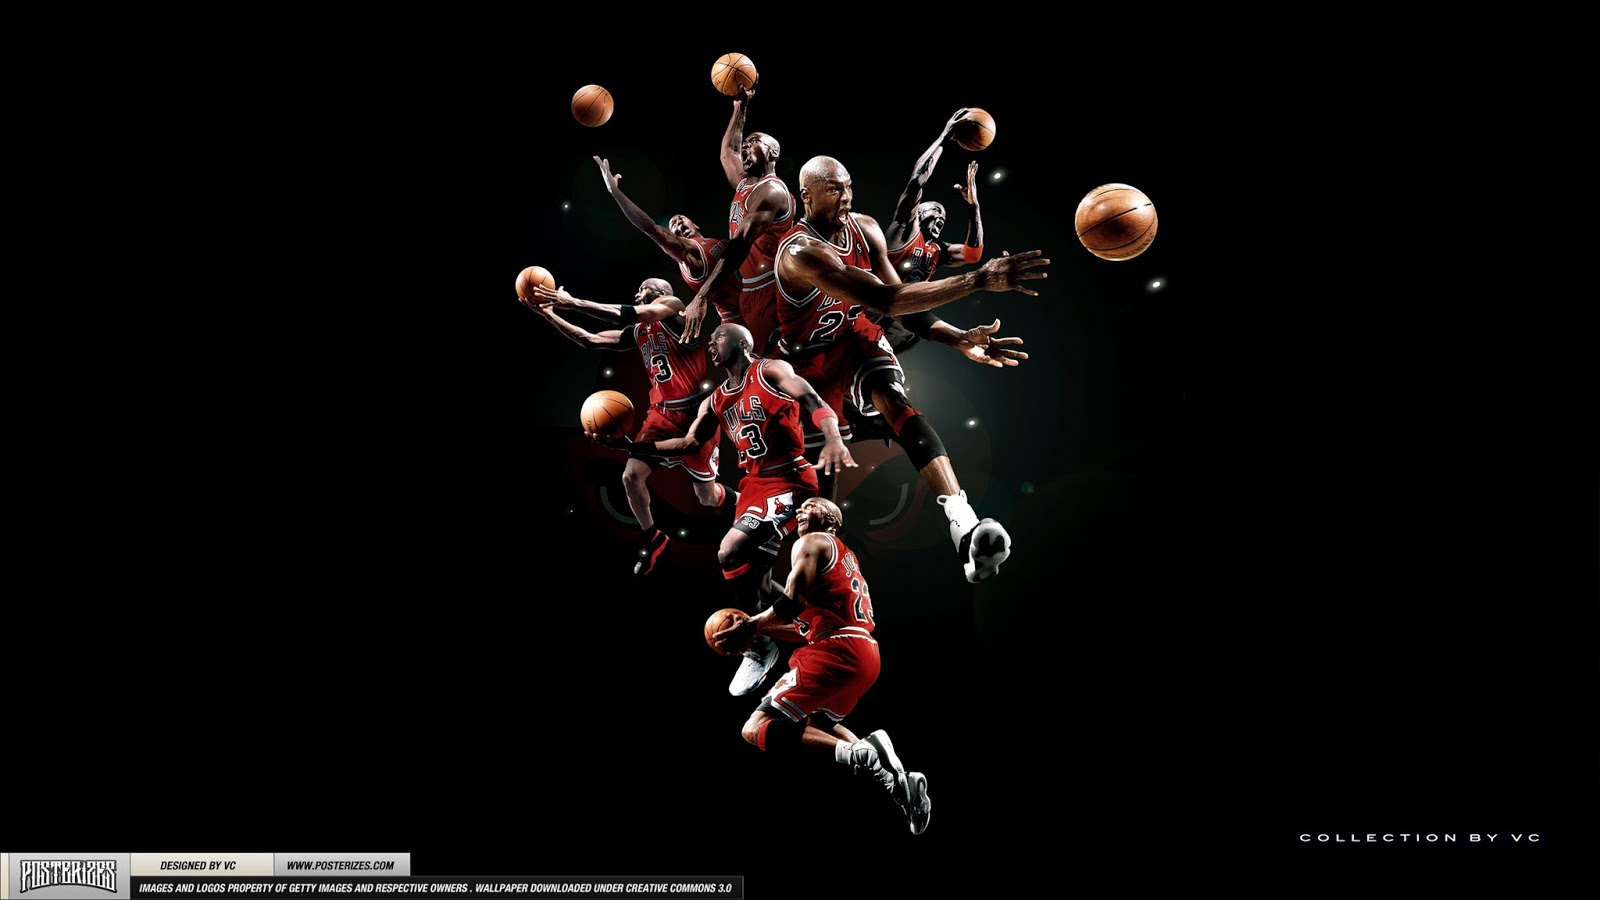 Michael Jordan Videos Imagenes Y Algo M S